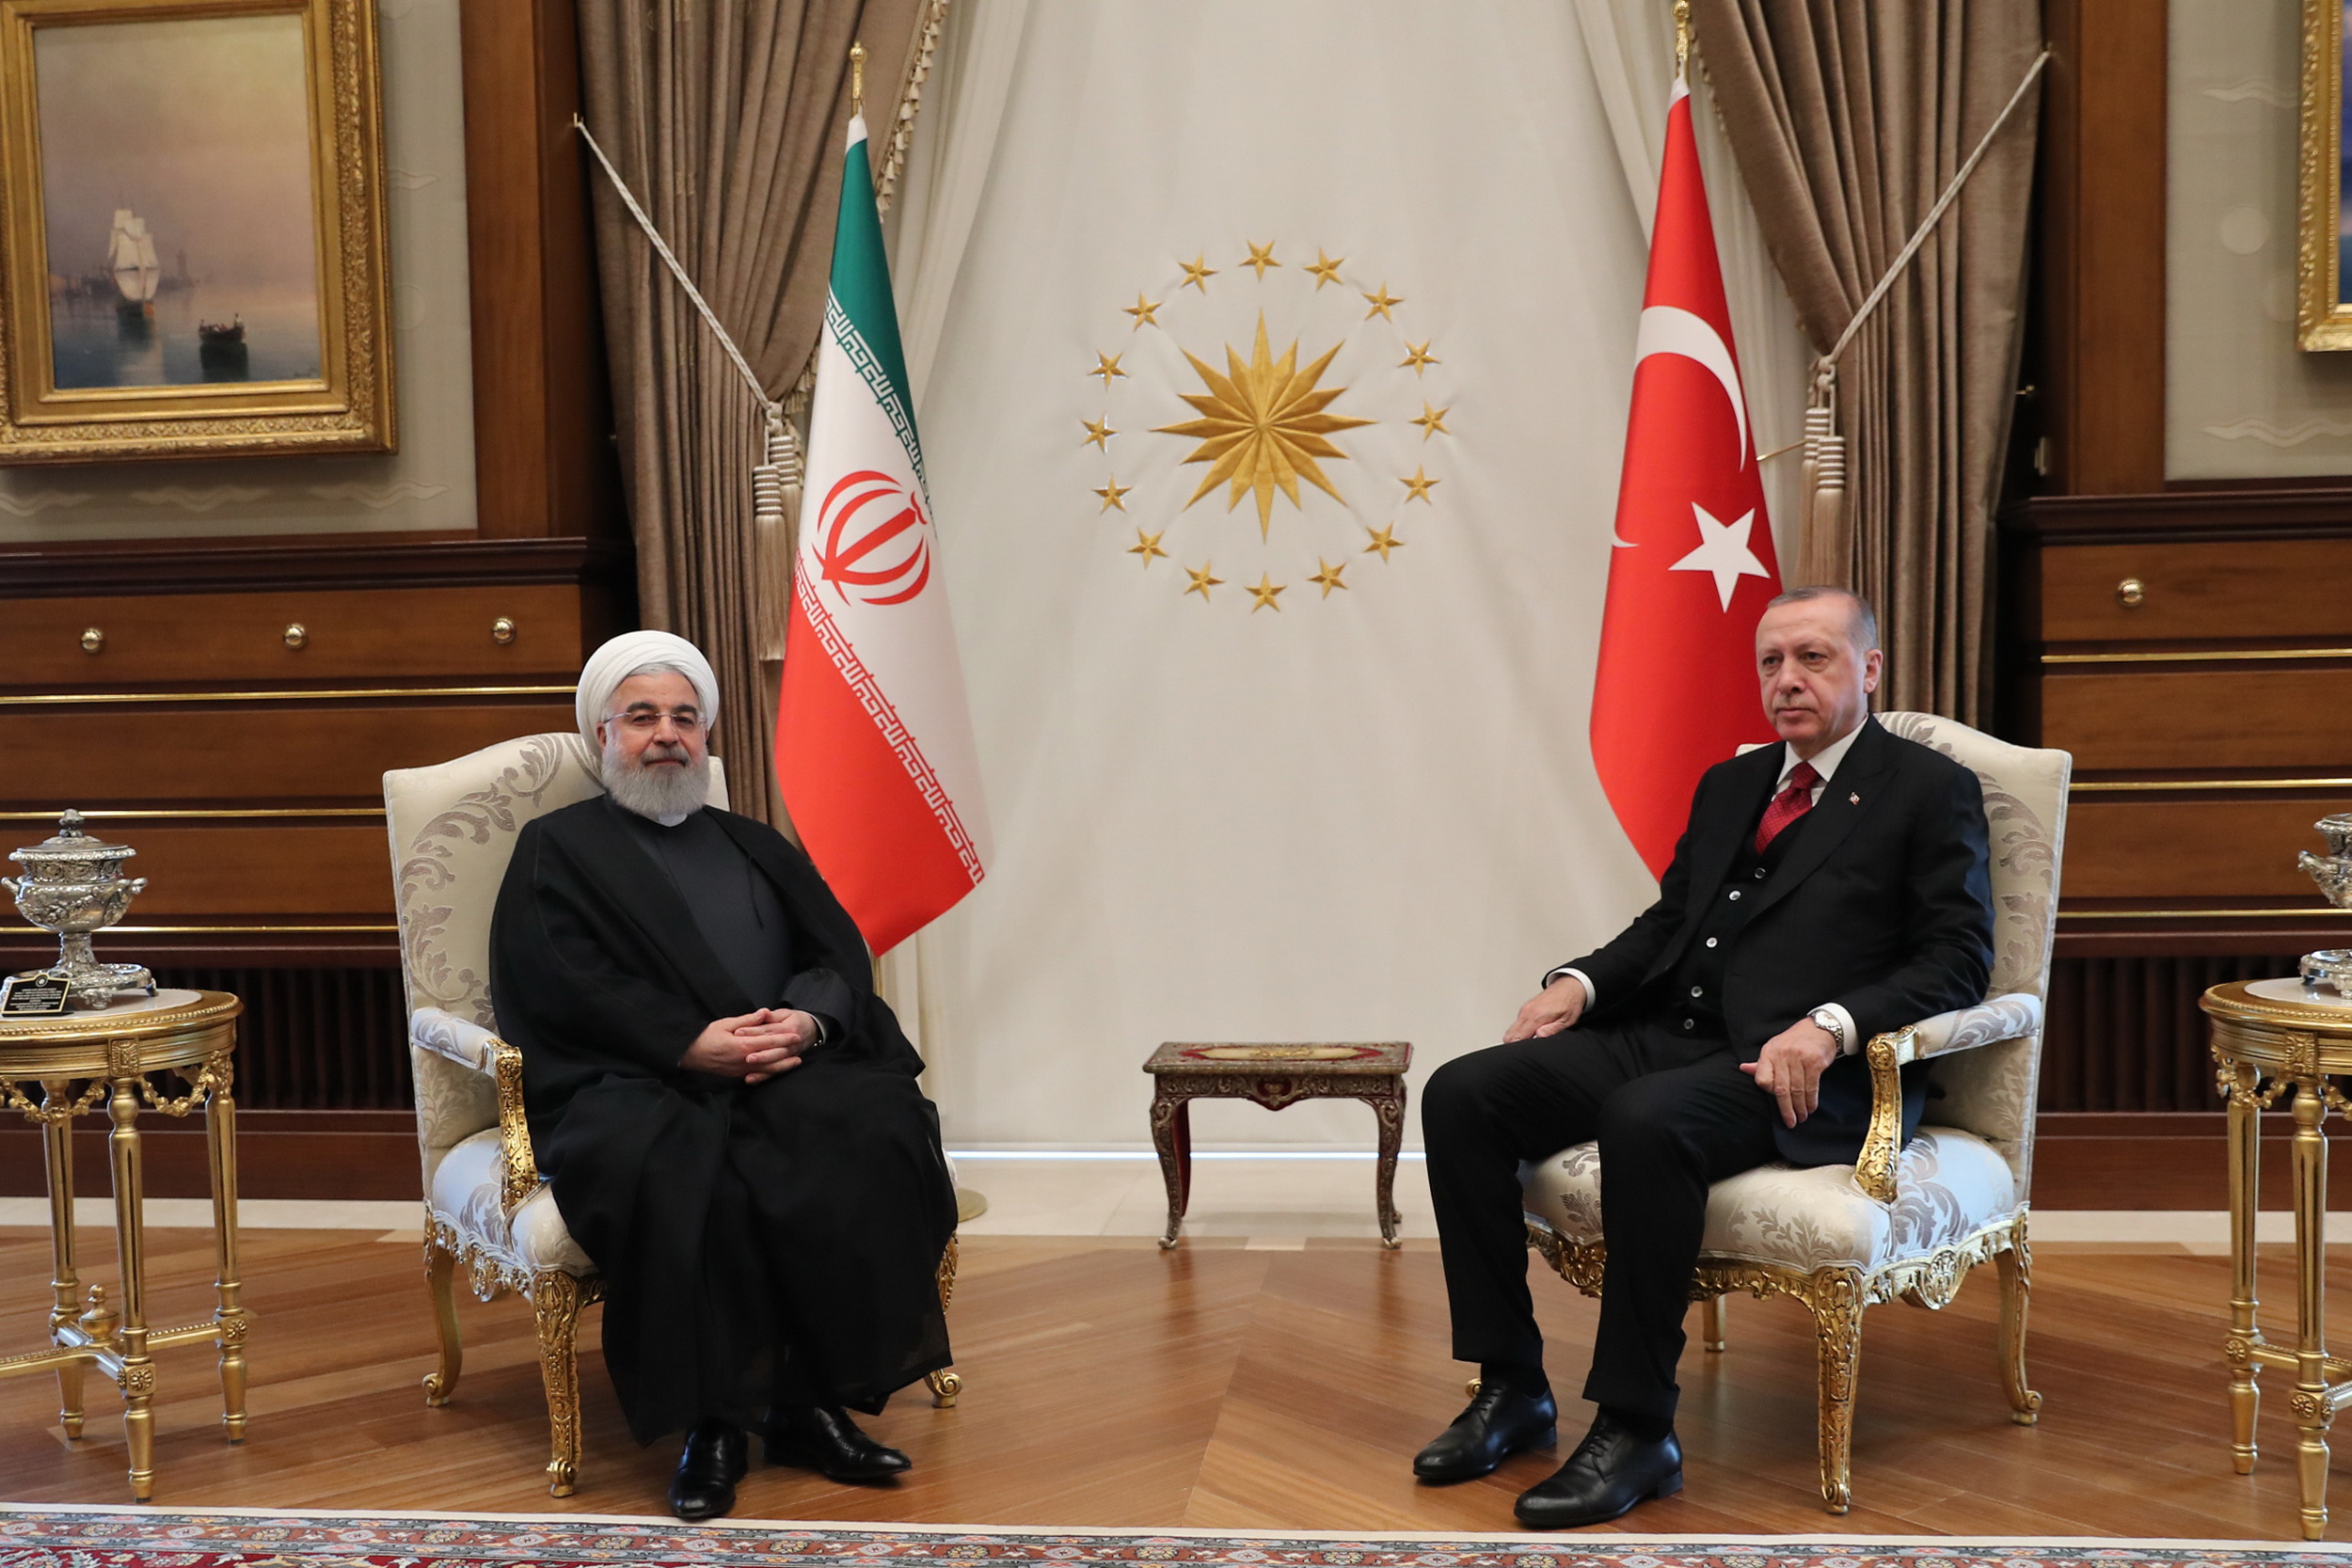 دکتر روحانی در دیدار رئیس جمهور ترکیه: توسعه روابط با ترکیه به عنوان کشور دوست، همسایه و مسلمان برای ایران حائز اهمیت است